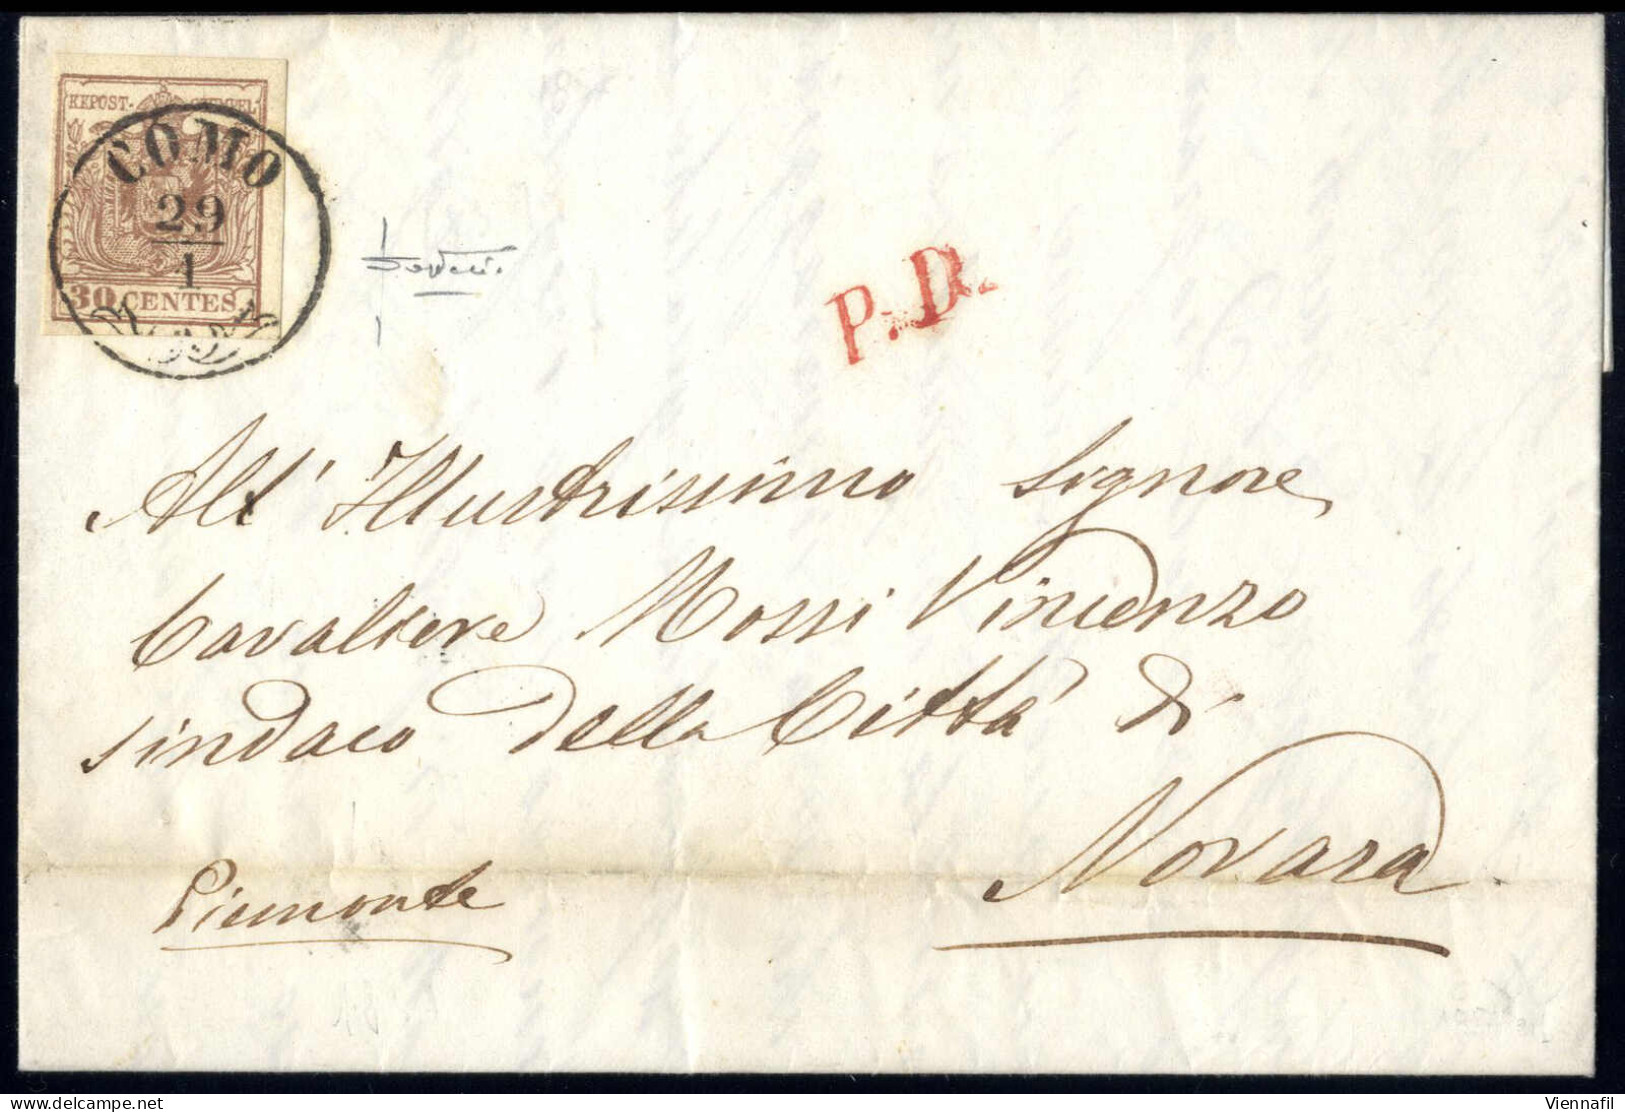 Cover 1857, Lettera Da Como Del 29.1 Per Novara Affrancata Con 30 C. Bruno Grigiastro II Tipo Carta A Macchina, Cert. So - Lombardy-Venetia